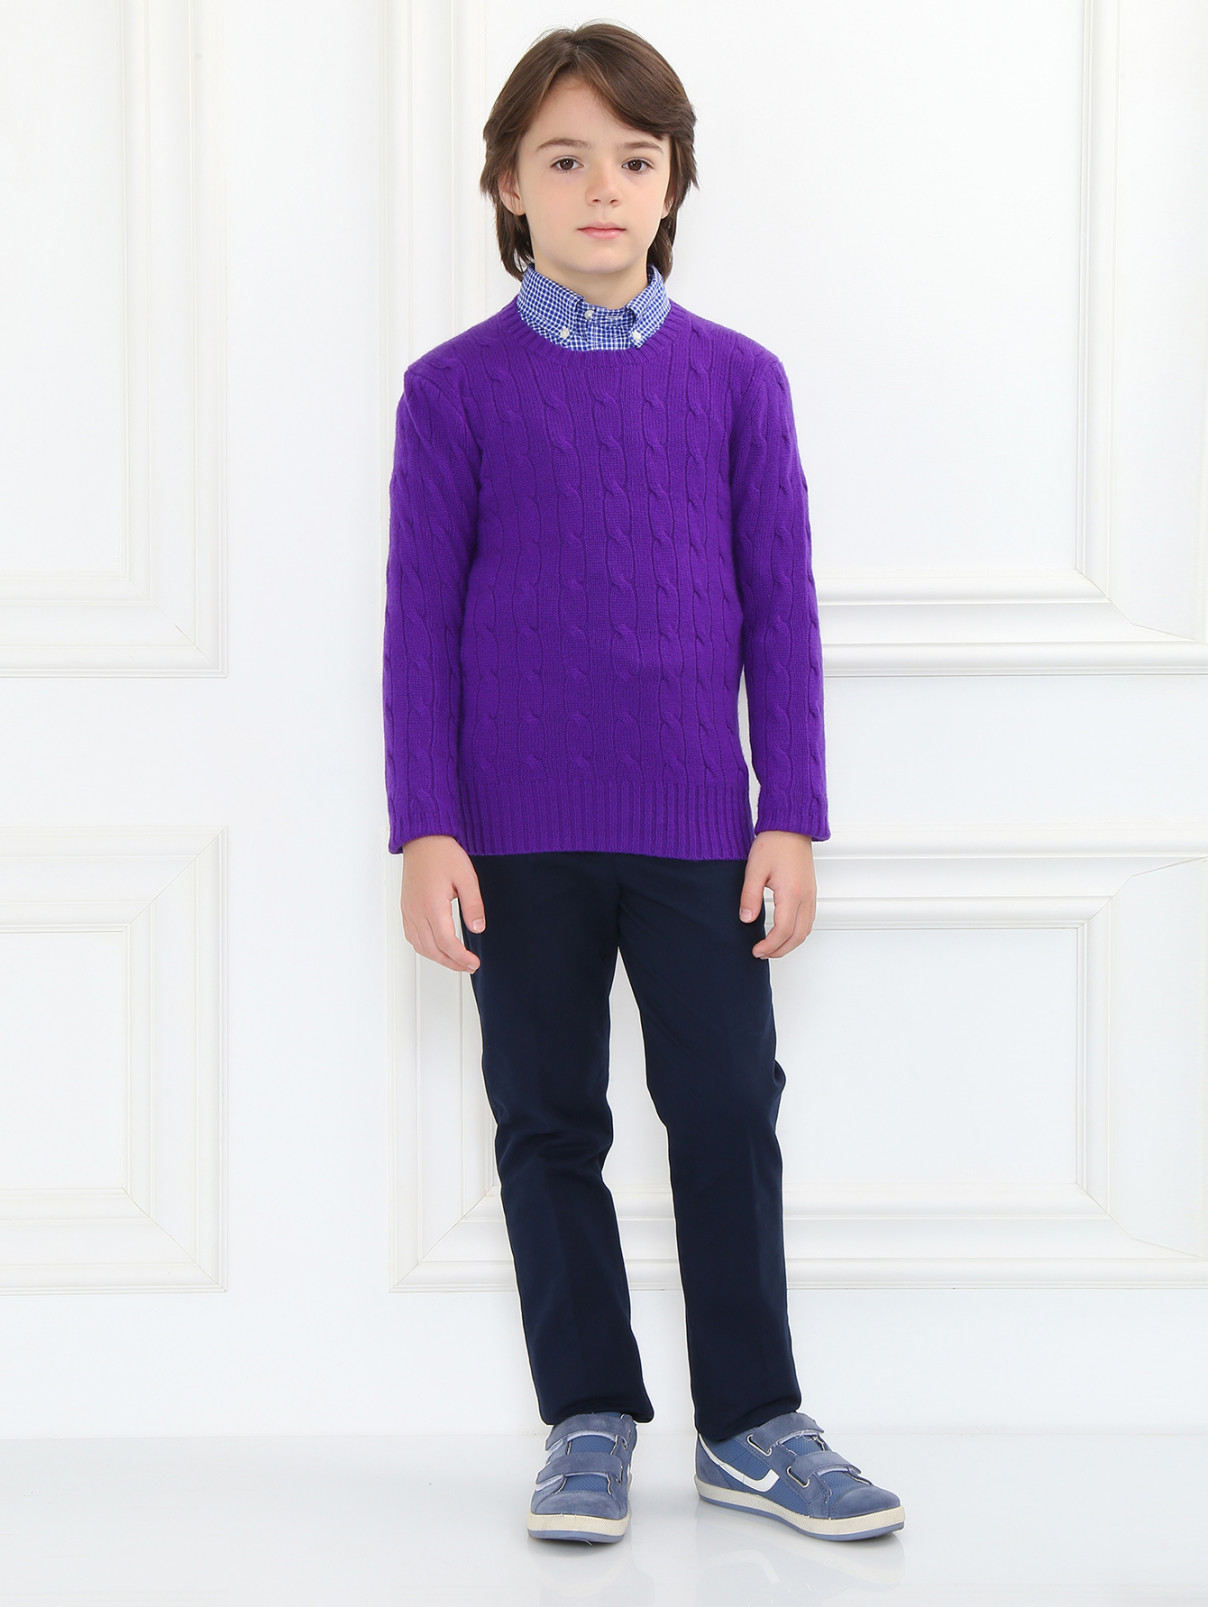 Джемпер из кашемира фактурной вязки Ralph Lauren  –  Модель Общий вид  – Цвет:  Фиолетовый